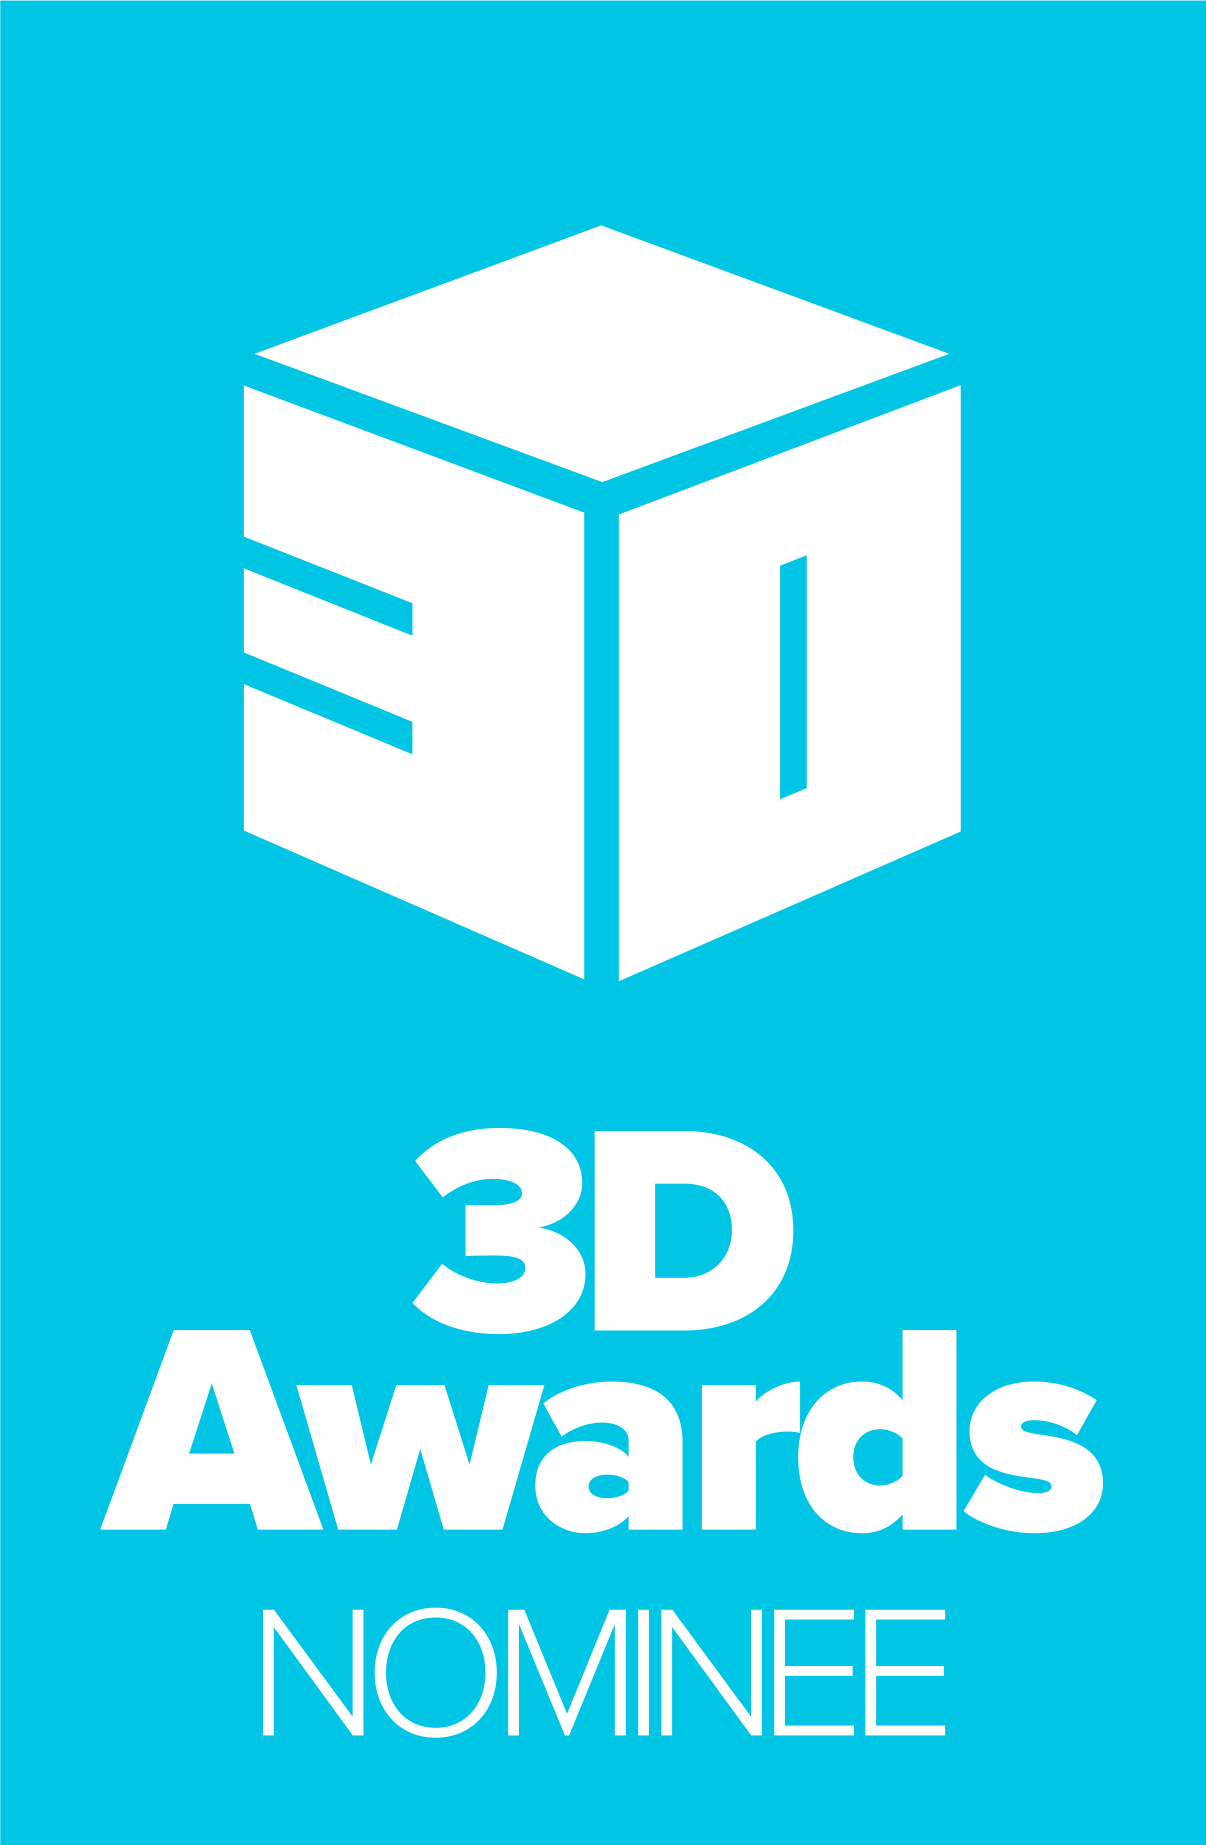 3D Awards Nominee